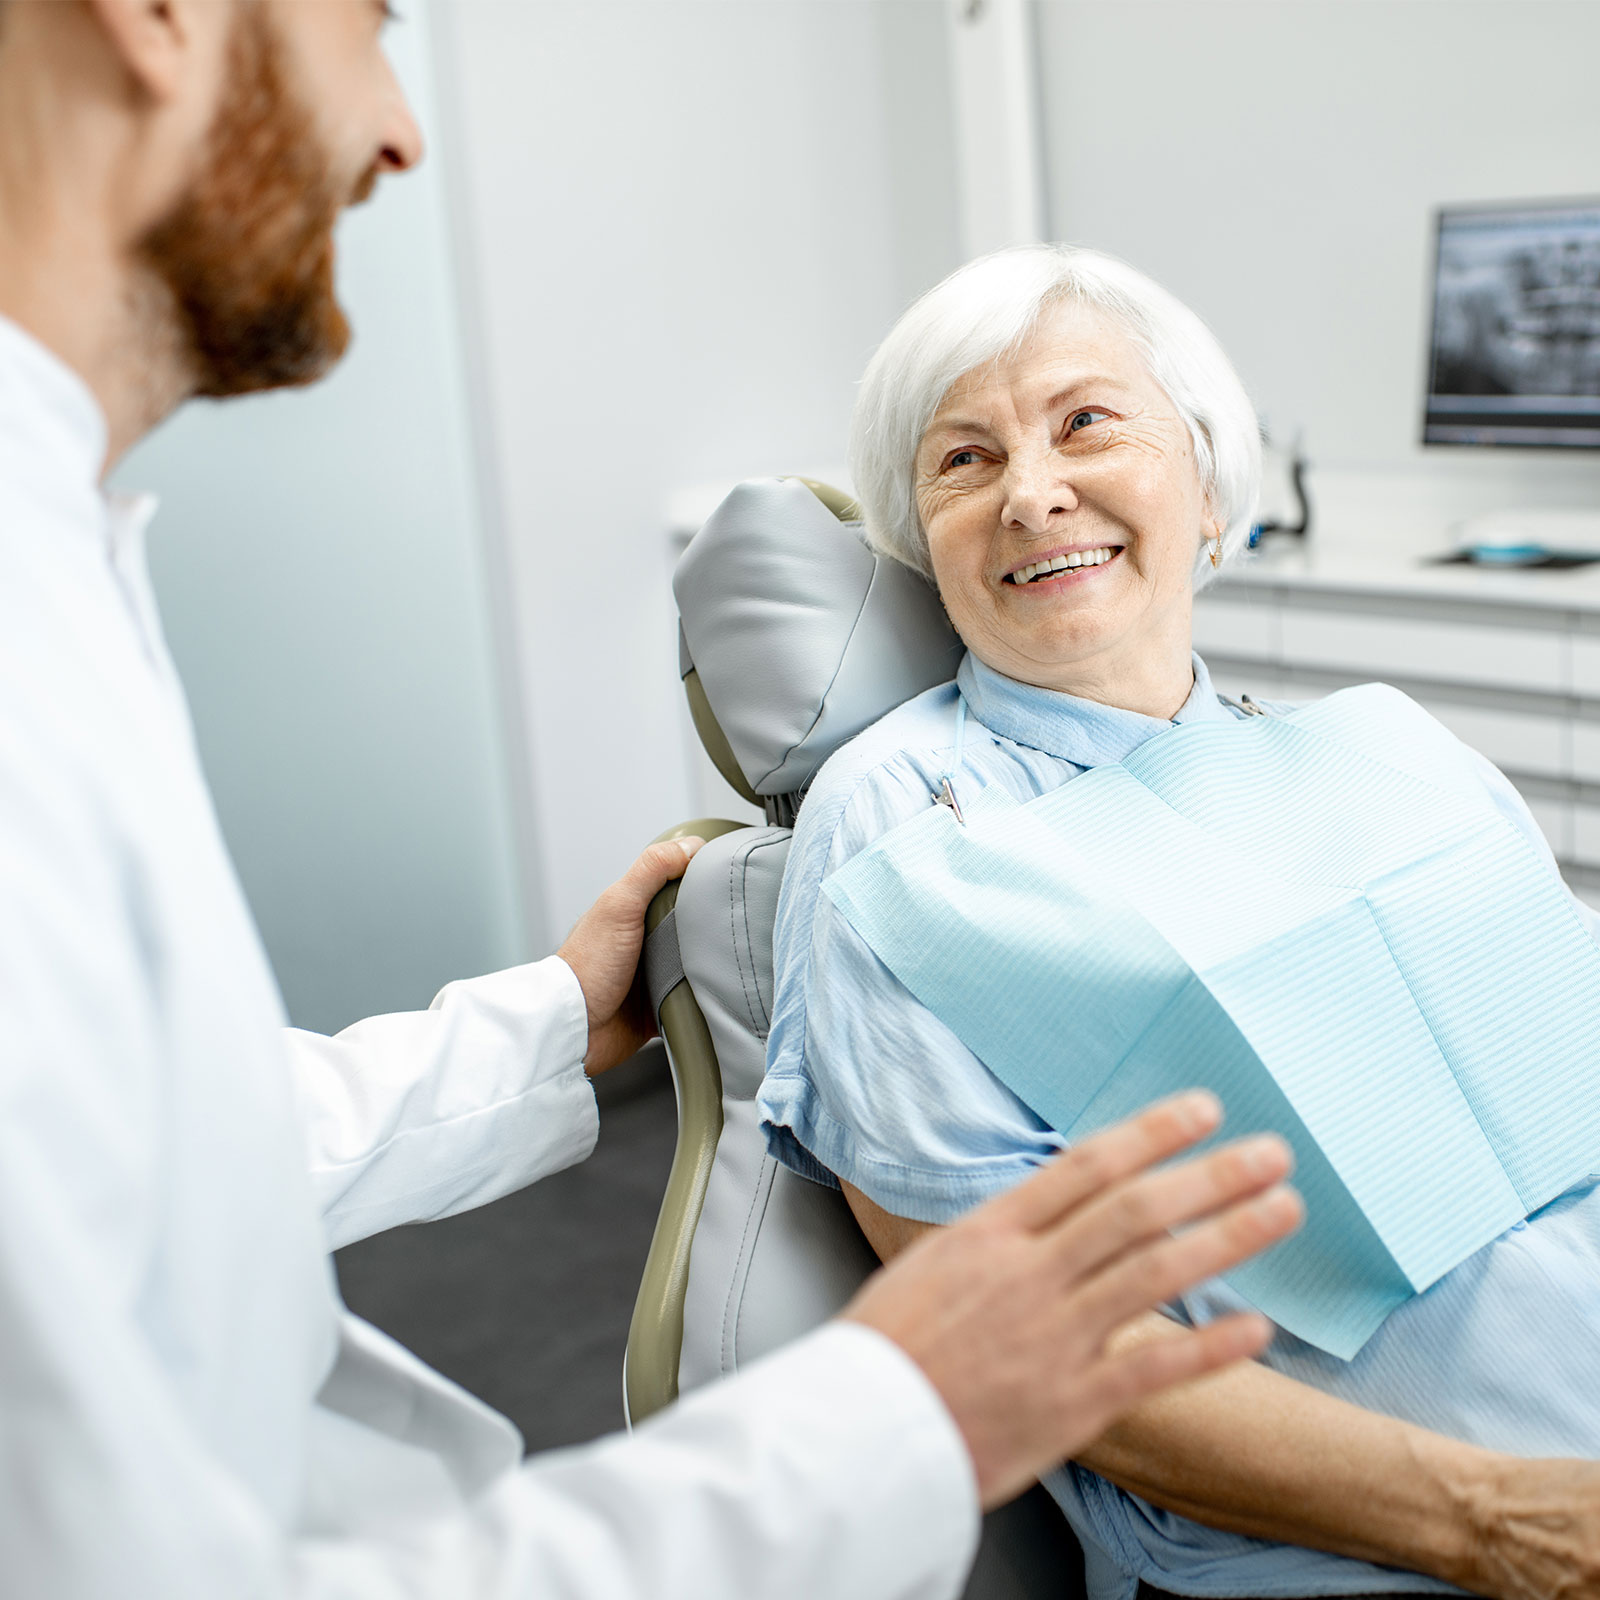 An older woman gets a dental exam.